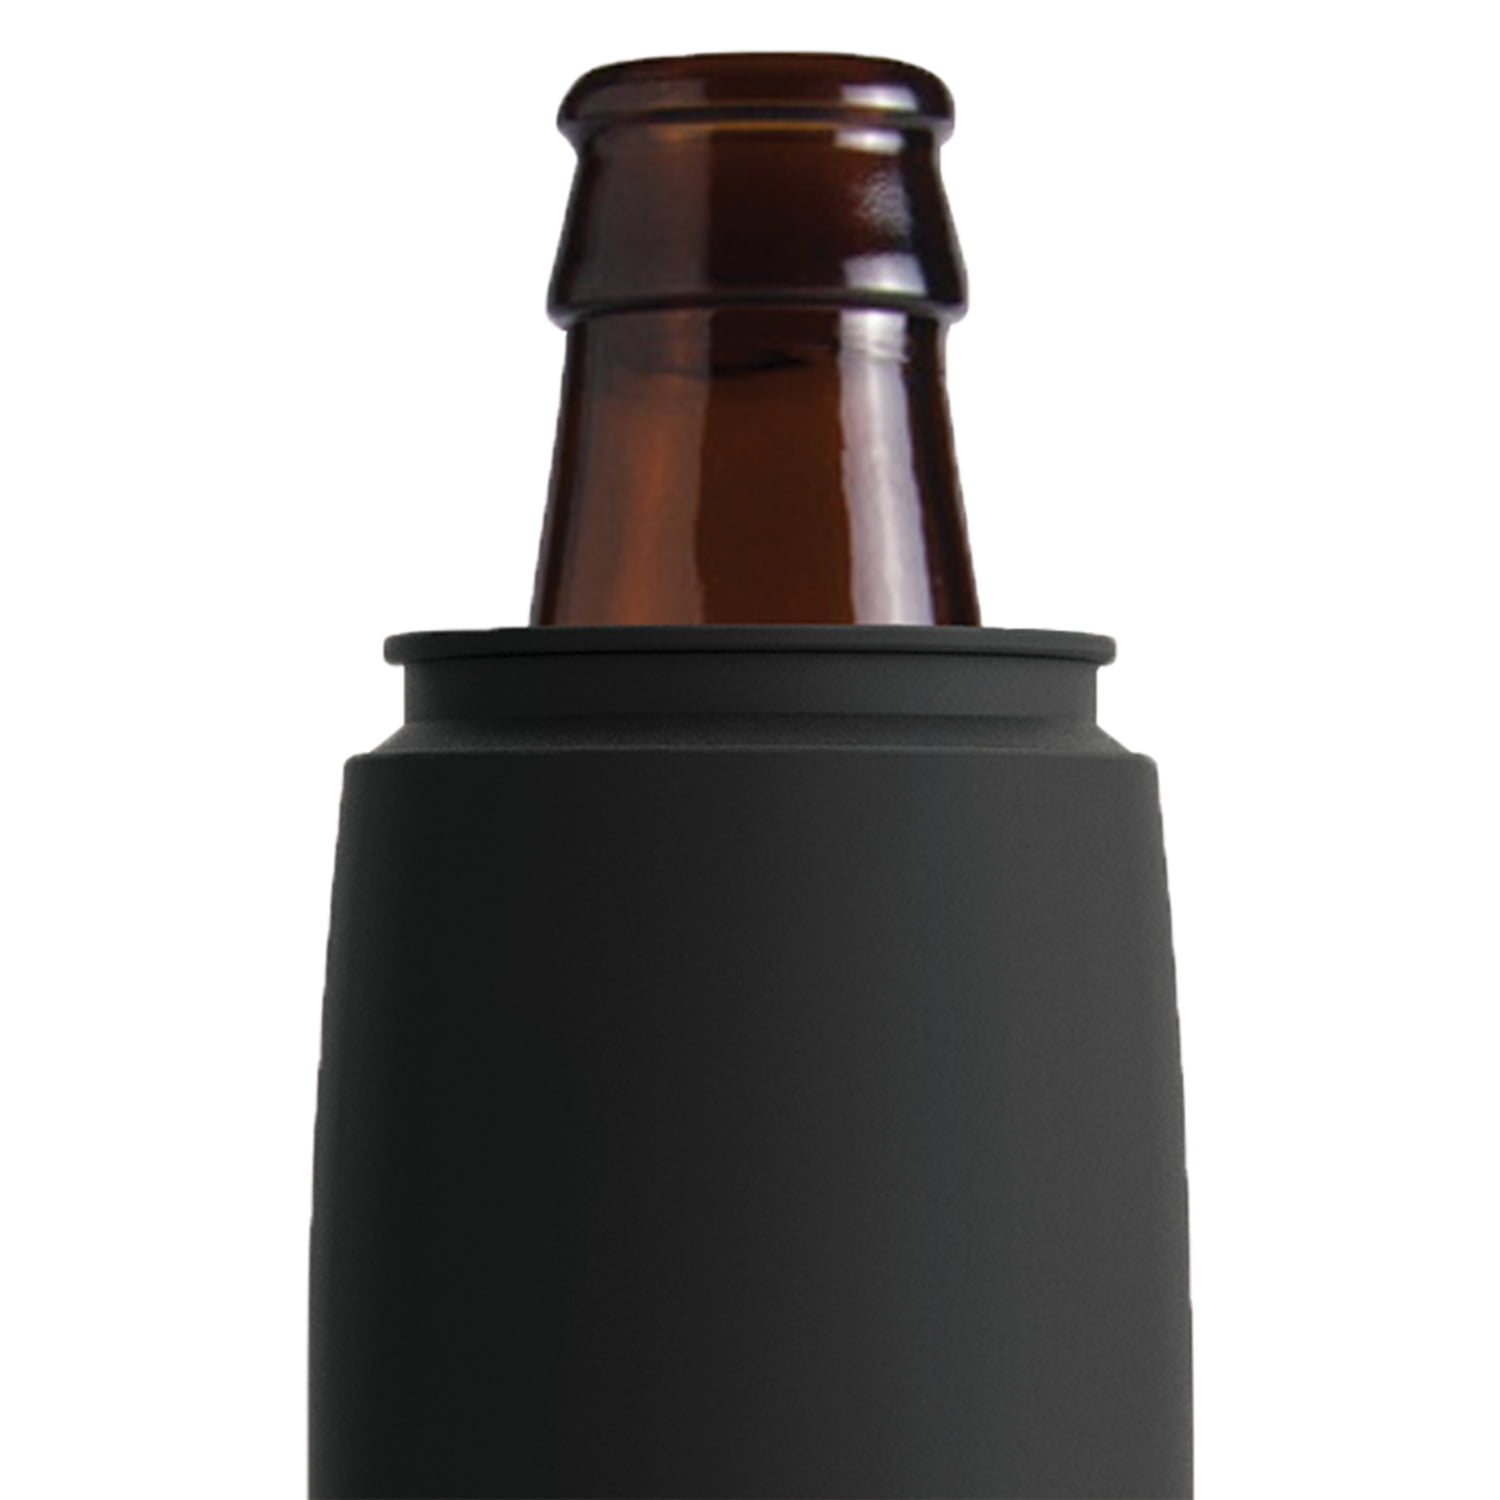 Asobu Frosty Beer Cooler, 2 pk. - Black/Copper